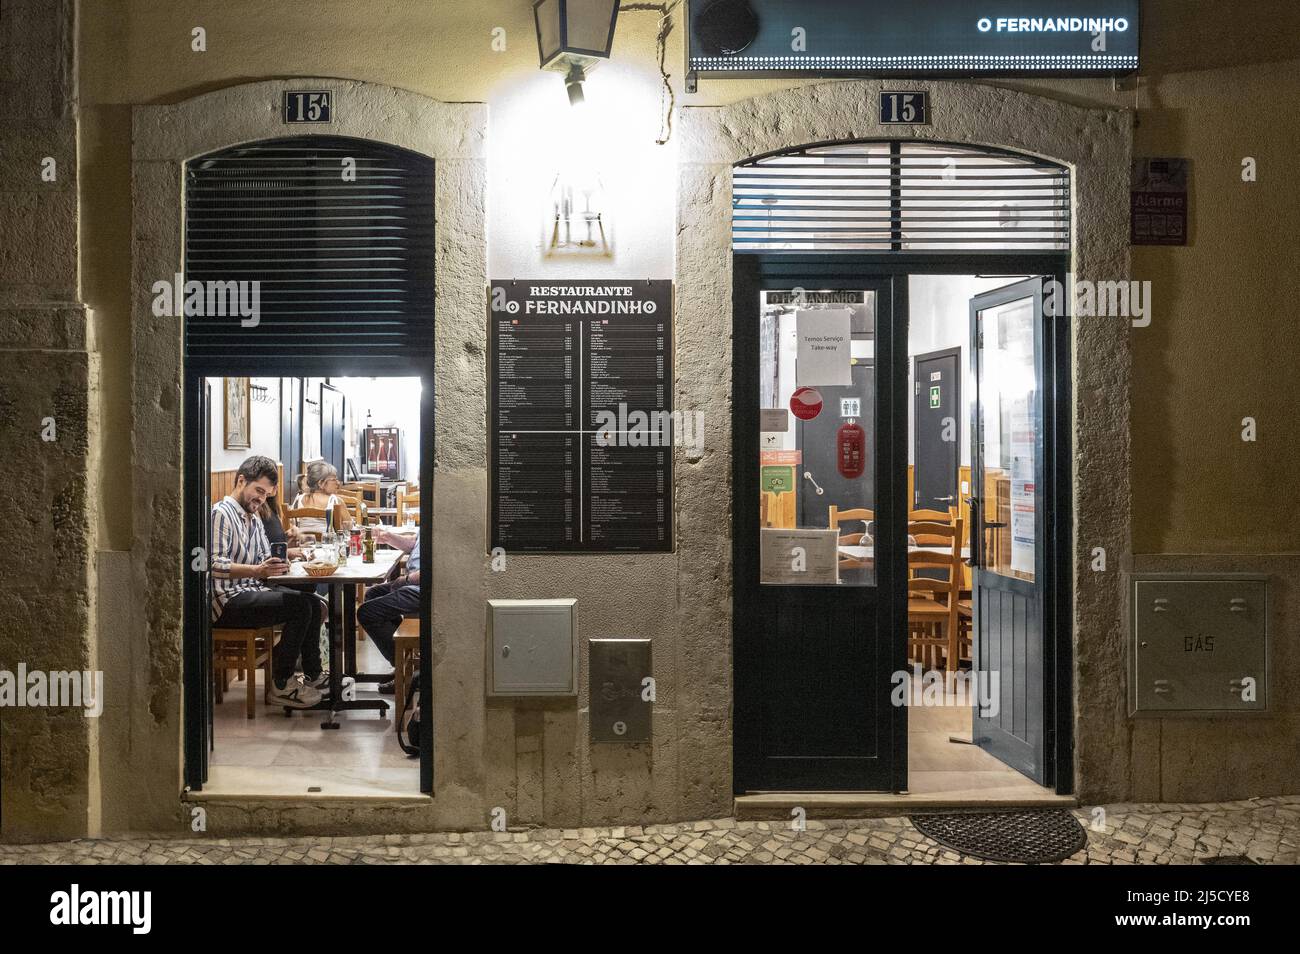 Restaurant O Fernandinhoim Viertel Chiado auf 30.07.2020. [Automatisierte Übersetzung] Stockfoto